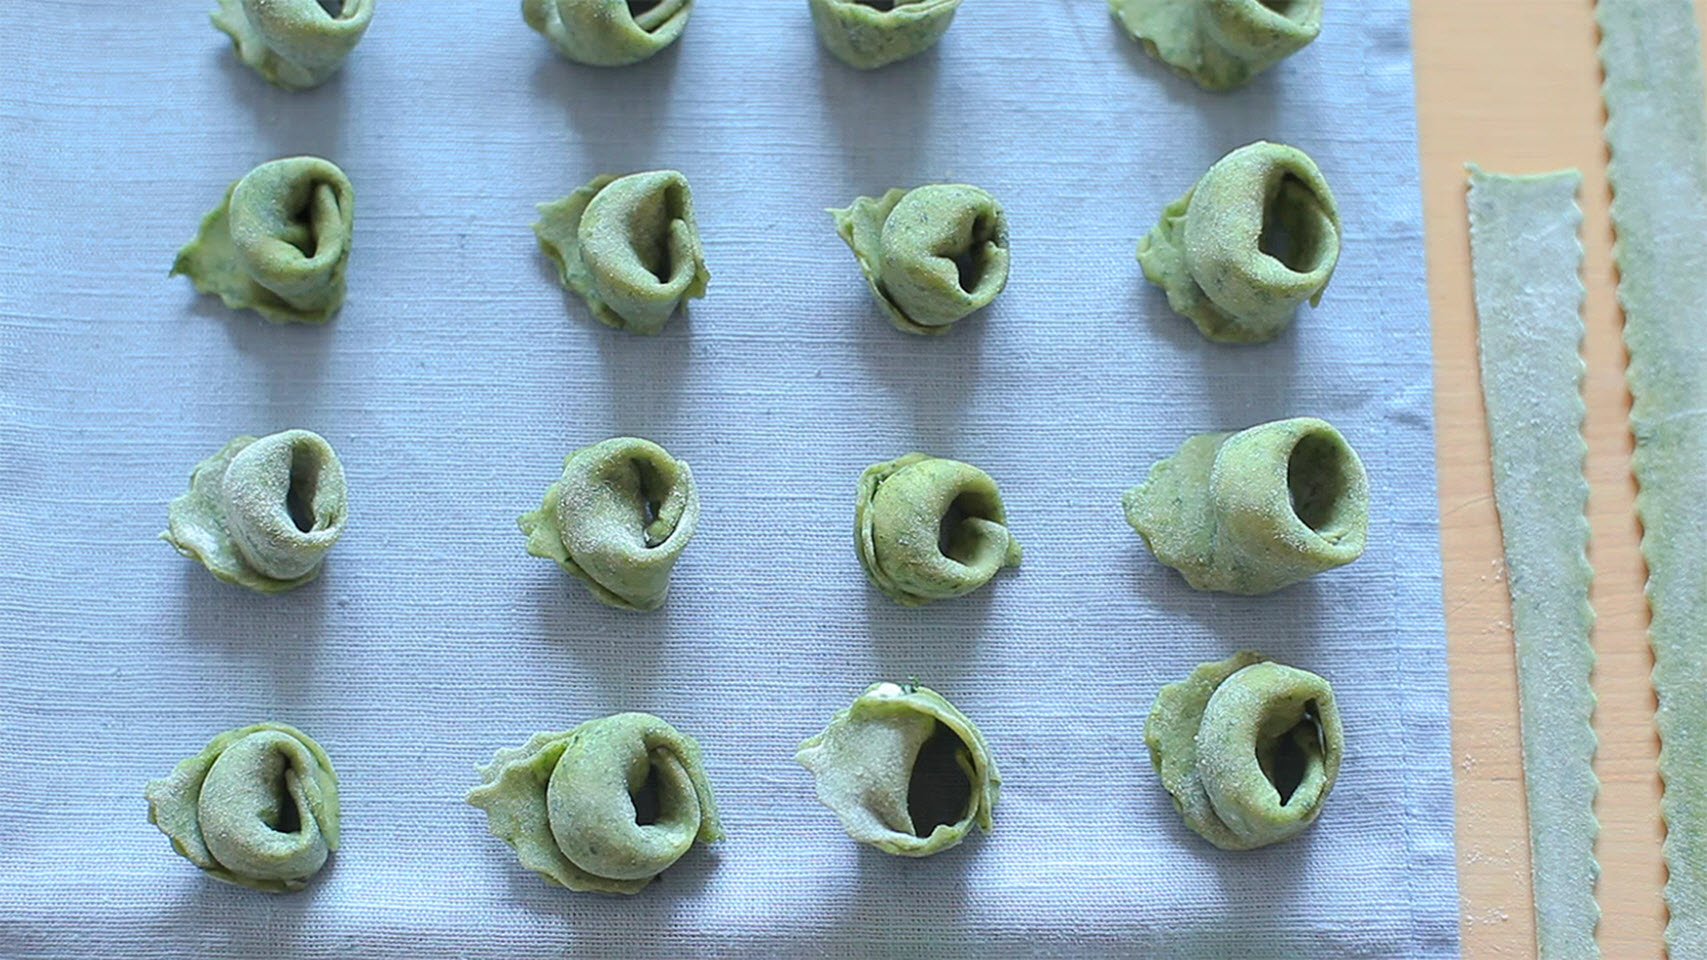 Spinach and Ricotta Tortellini AllrecipesPhoto